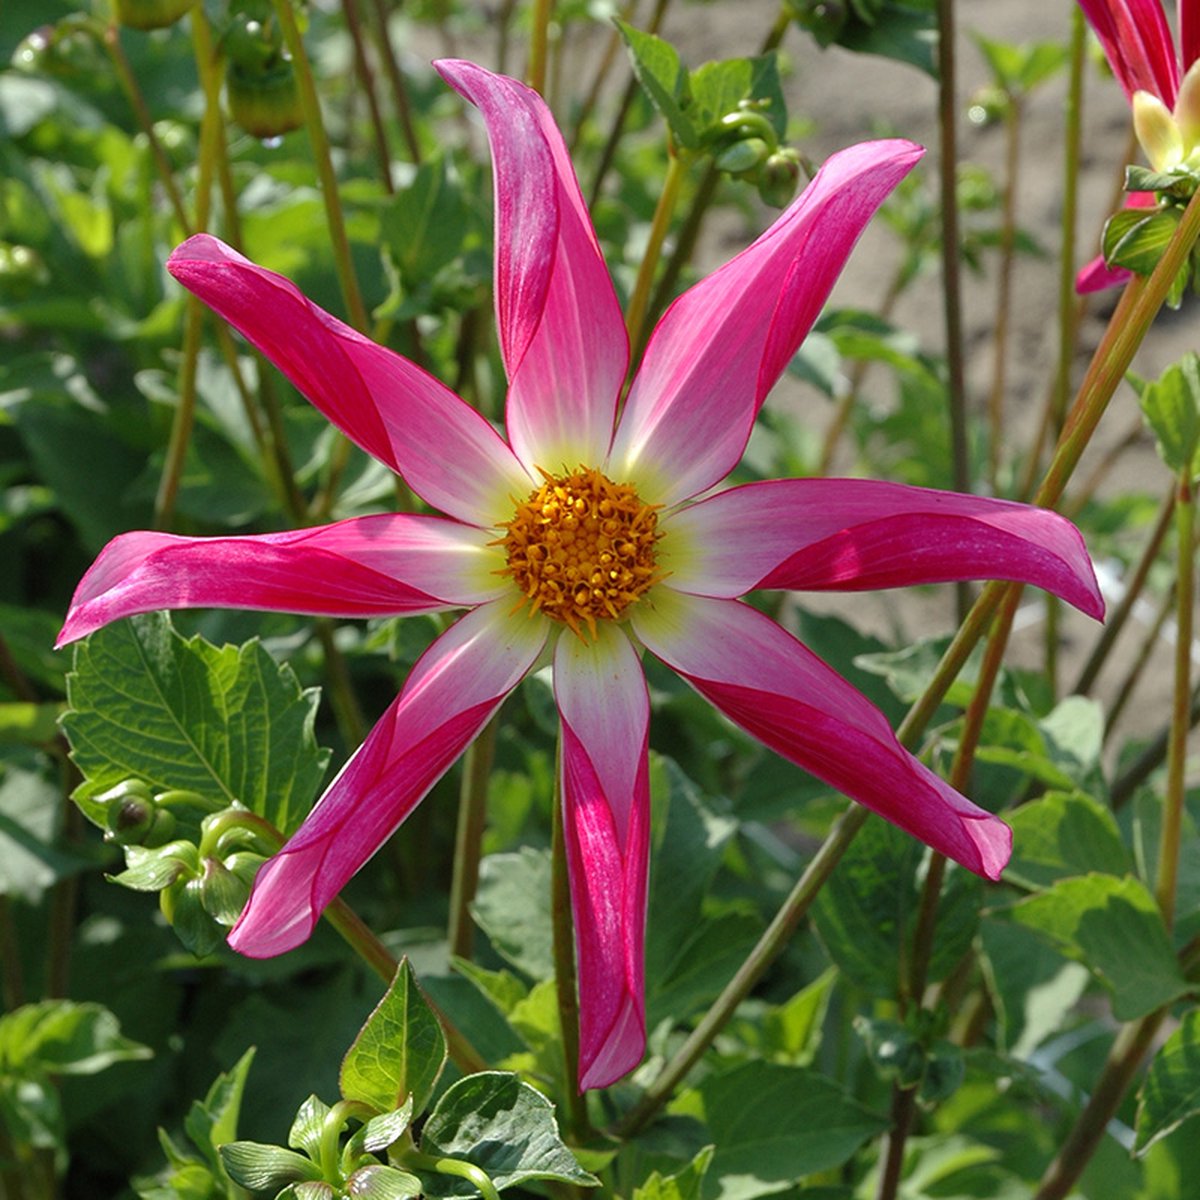 Dahlia Honka Pink | 1 stuk | Orchideetype Dahlia | Knol | Geel | Roze | Wit | Dahlia Knollen van Top Kwaliteit | 100% Bloeigarantie | QFB Gardening